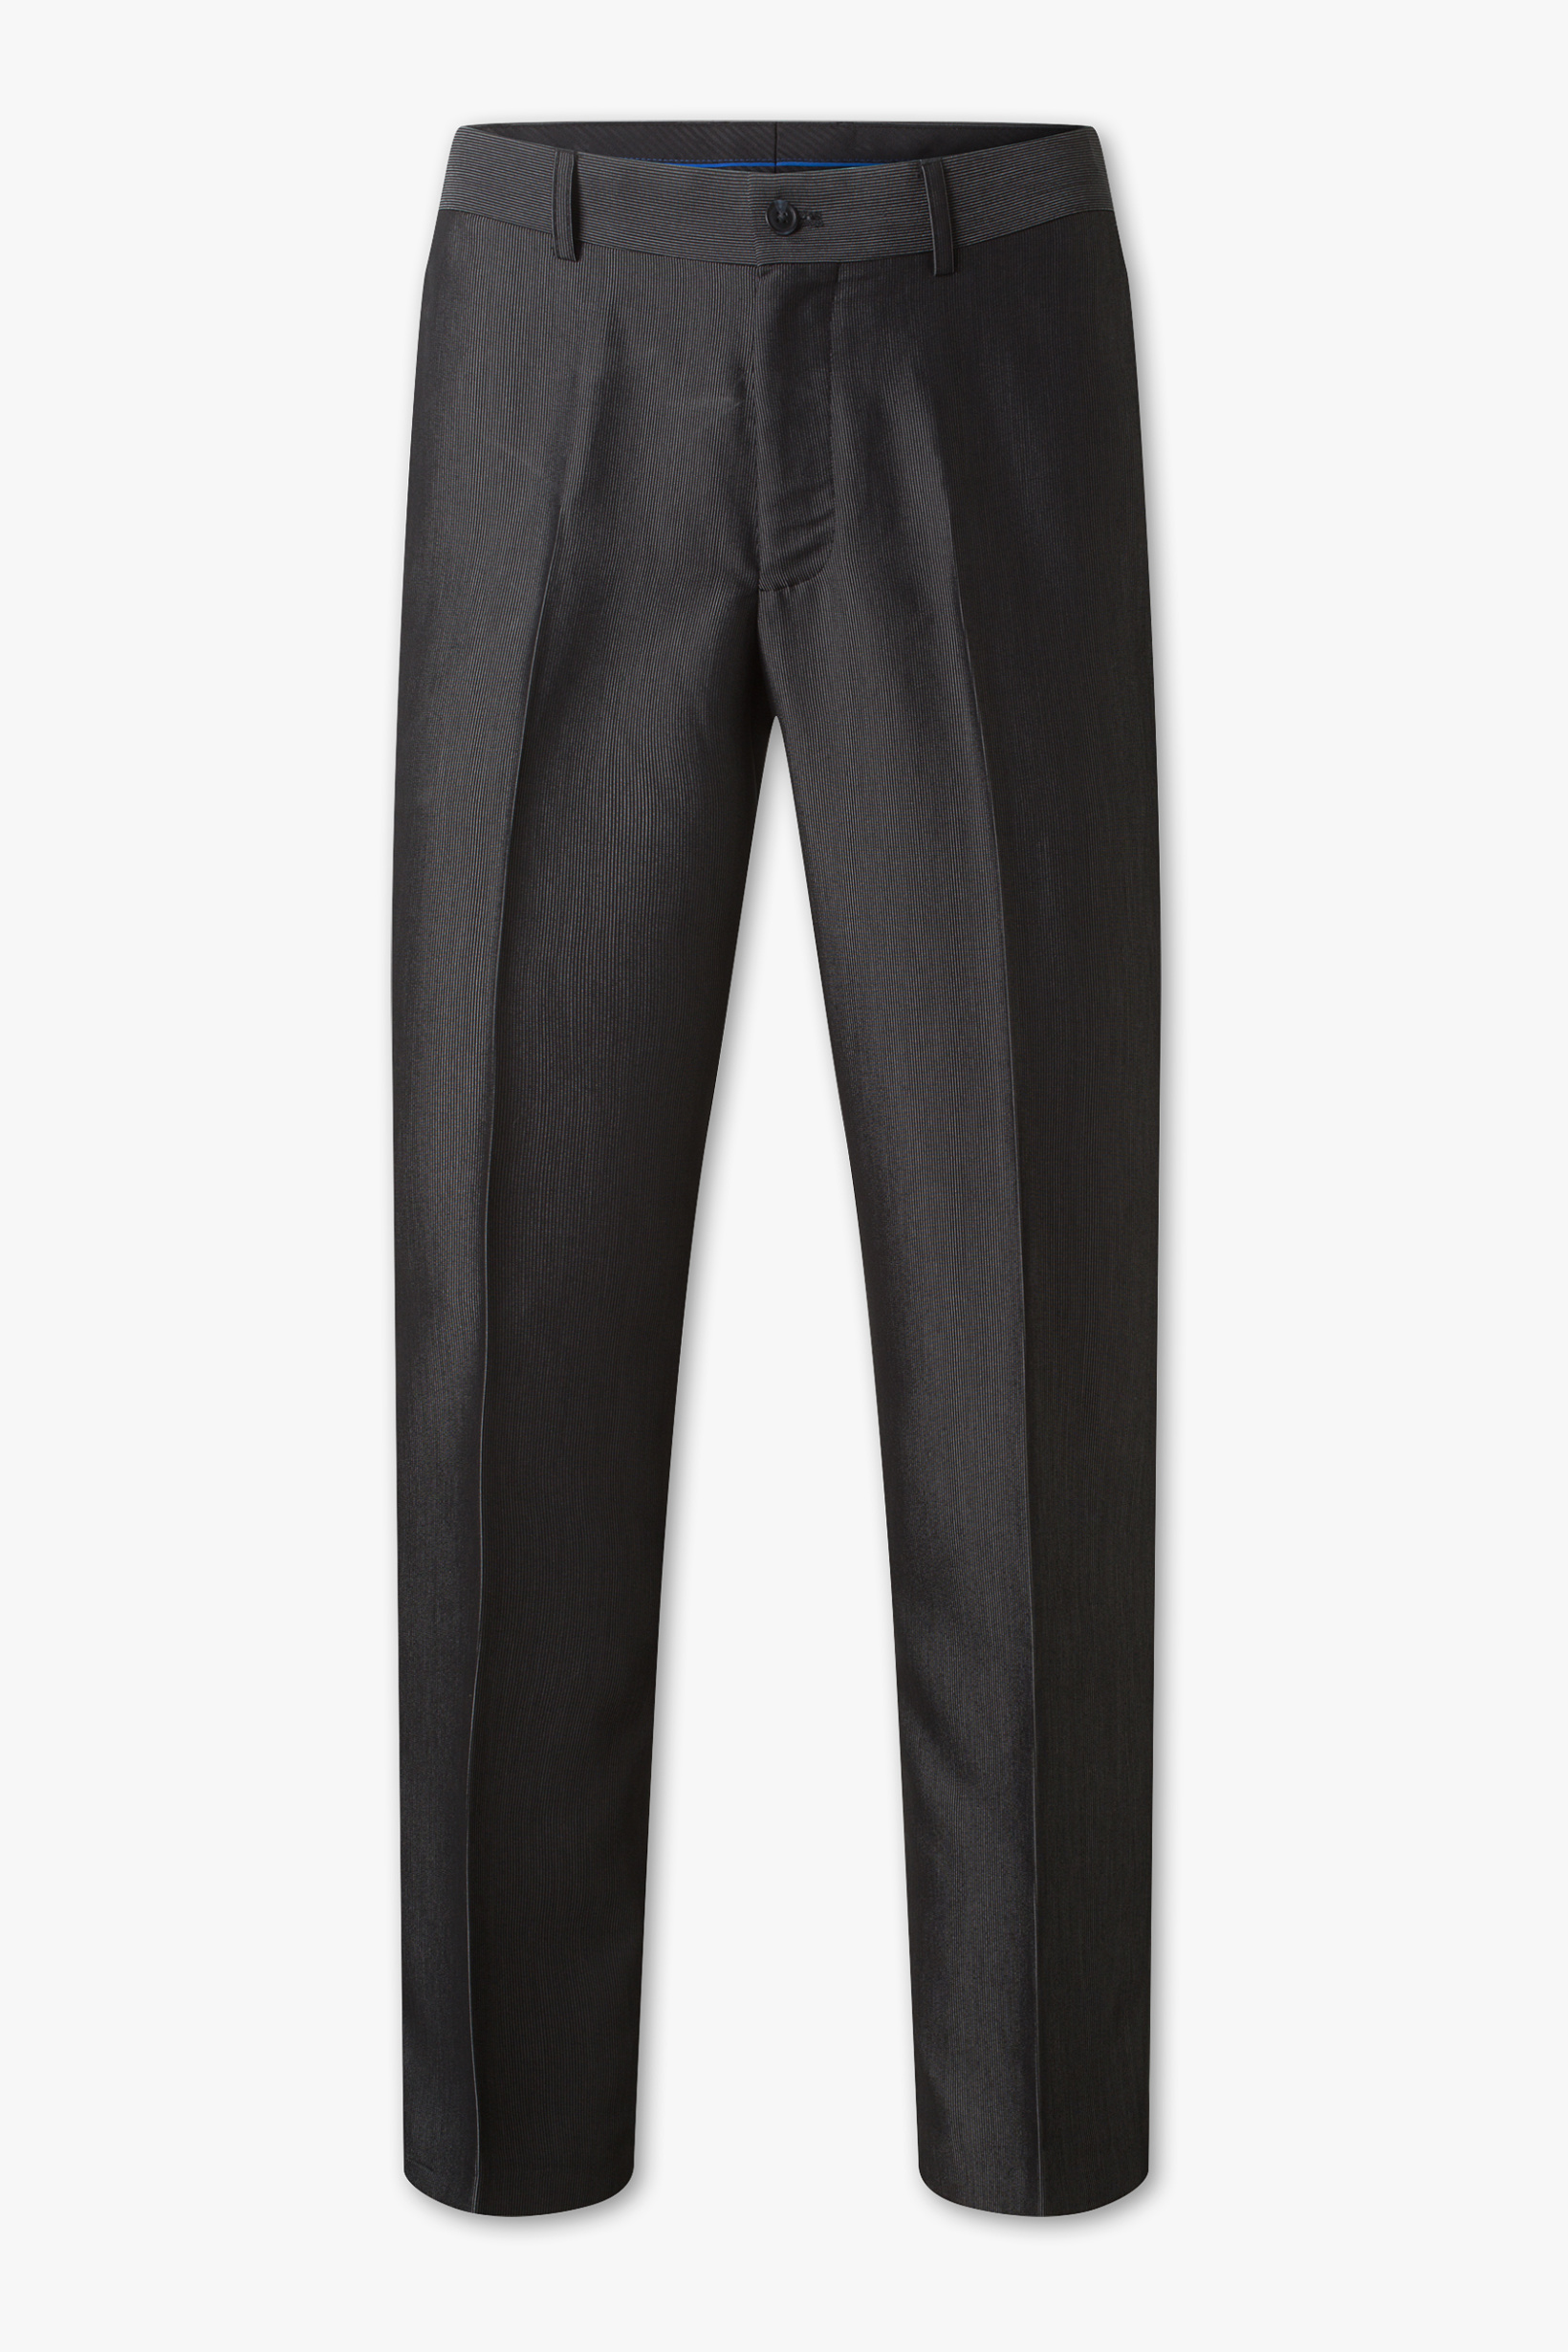 Canda Split suit–broek